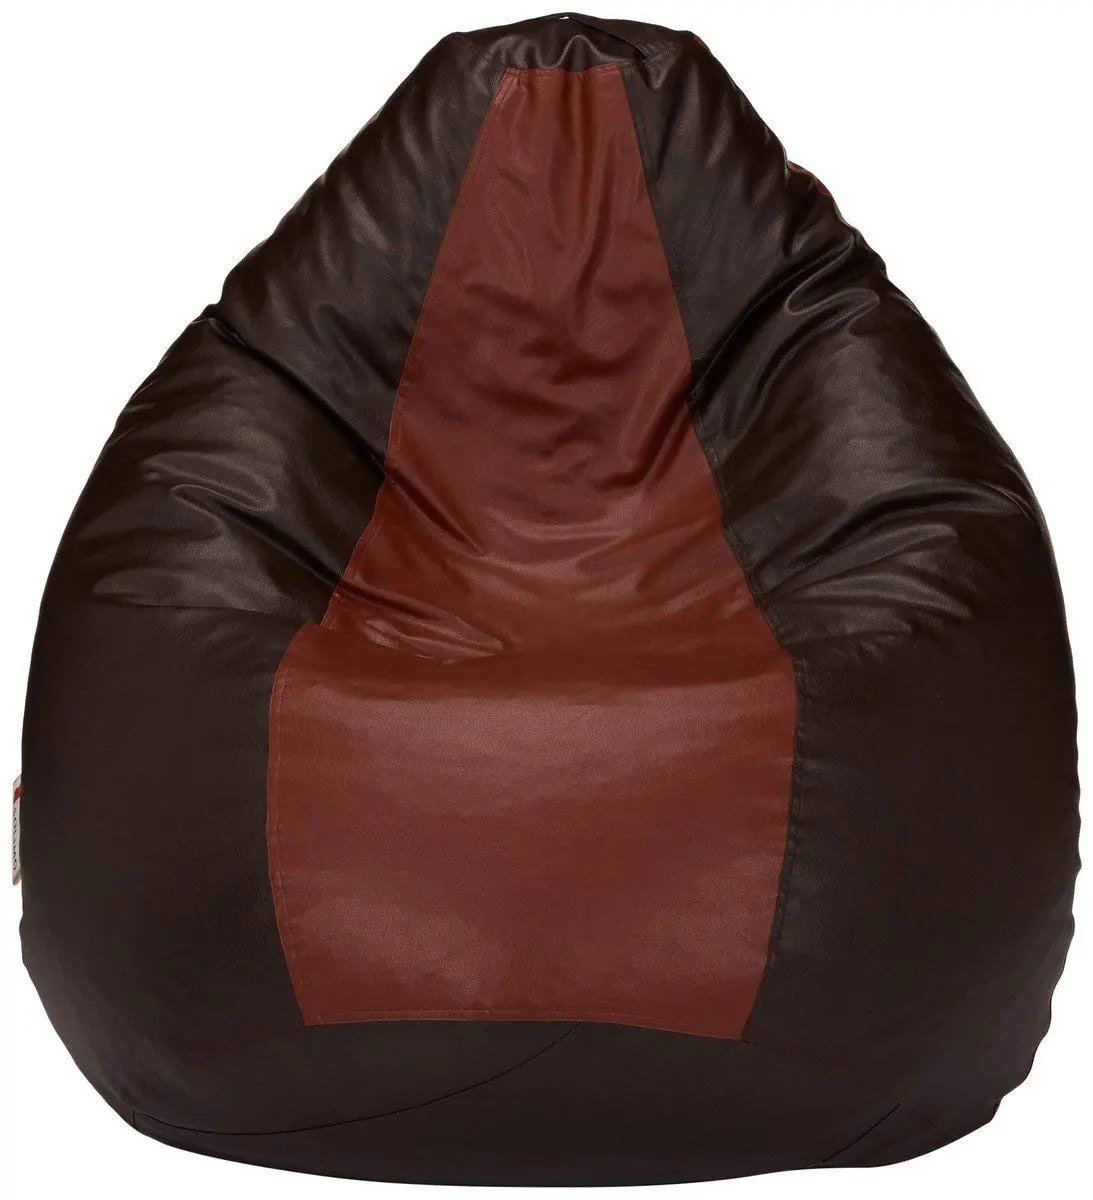 저렴한 사용자 정의 로고 풍선 거대한 커피 아늑한 실내 야외 게으른 소년 레저 콩 가방 의자 소파 커버 소파 콩 가방 의자